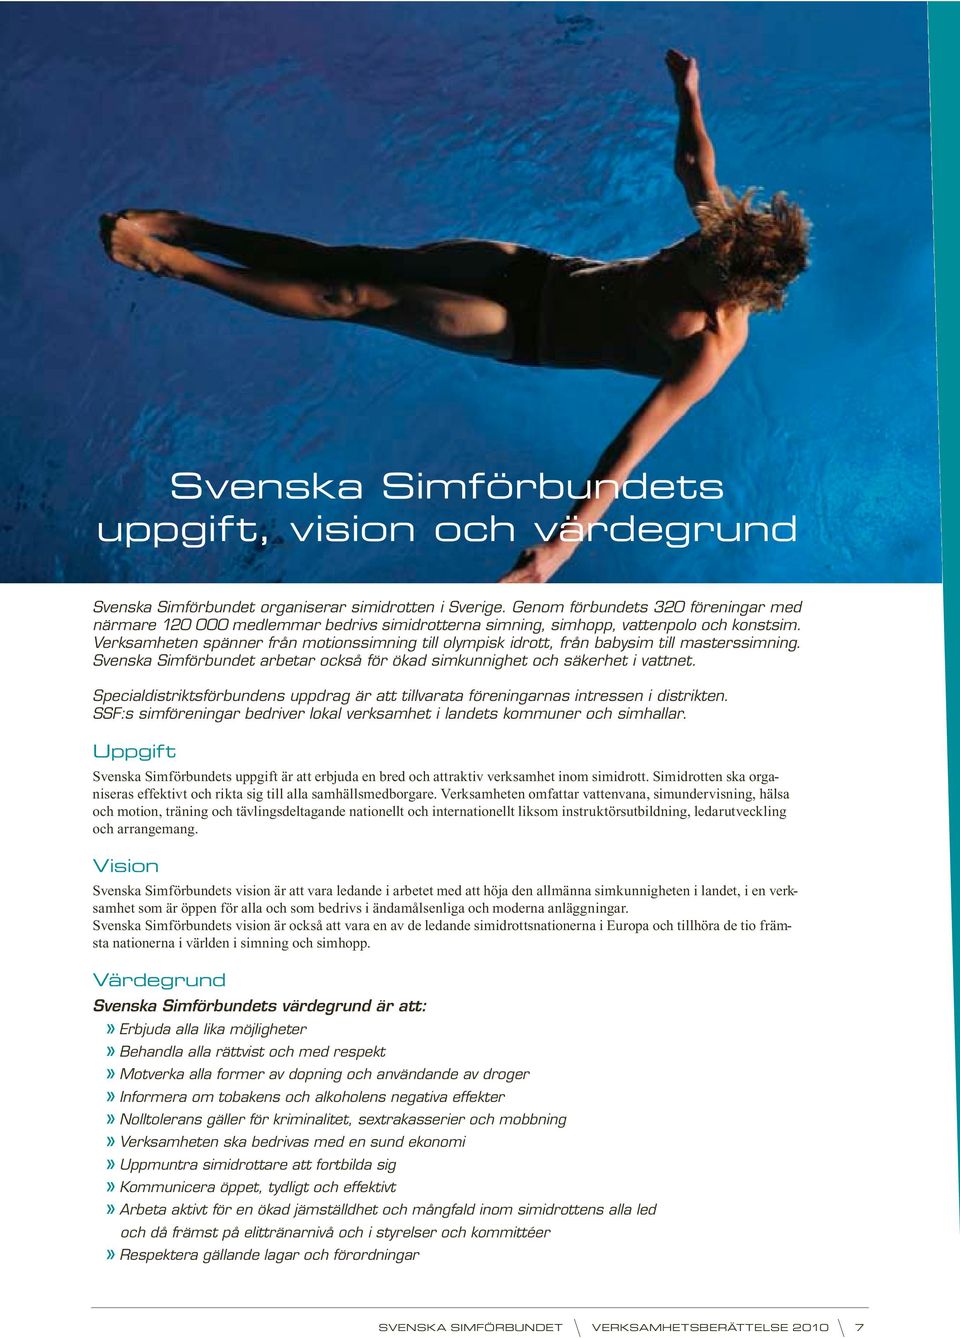 Verksamheten spänner från motionssimning till olympisk idrott, från babysim till masterssimning. Svenska Simförbundet arbetar också för ökad simkunnighet och säkerhet i vattnet.